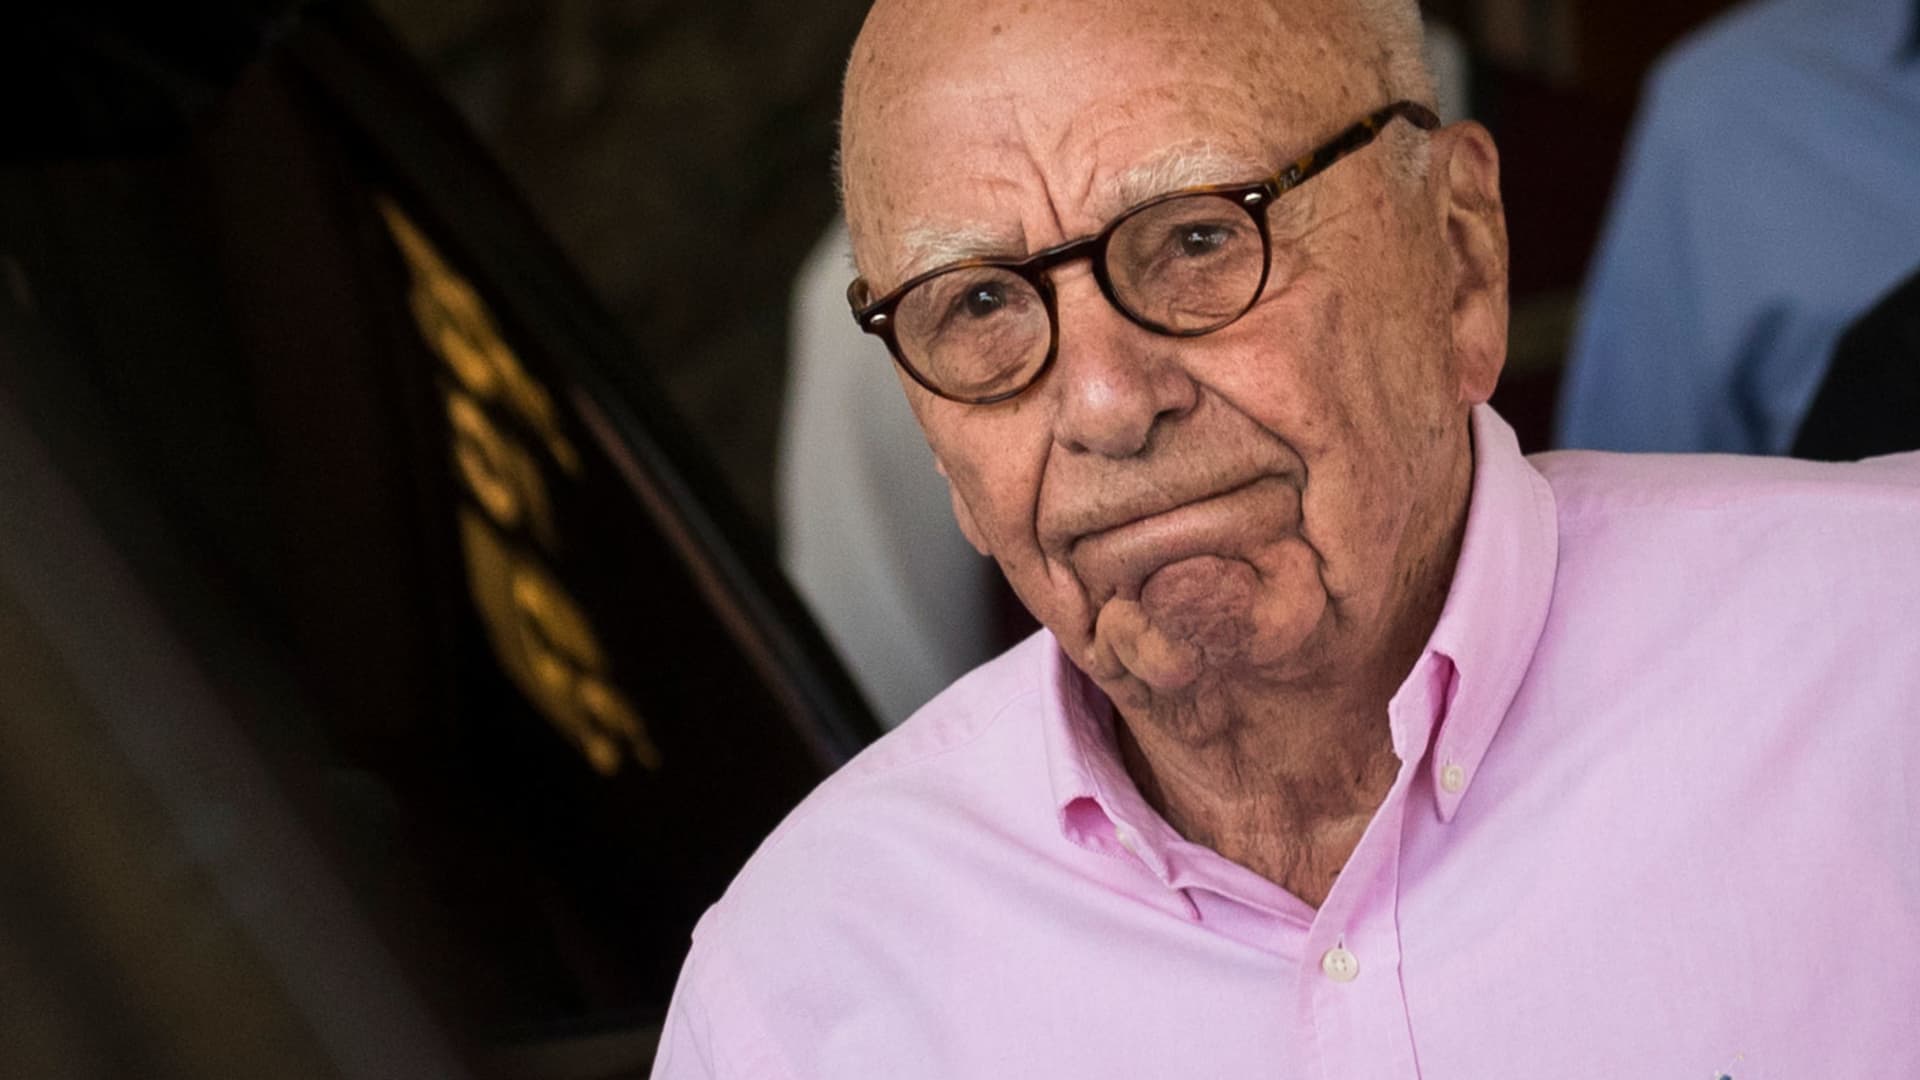 Rupert Murdoch will be deposed in Dominion’s $1.6 billion lawsuit against Fox